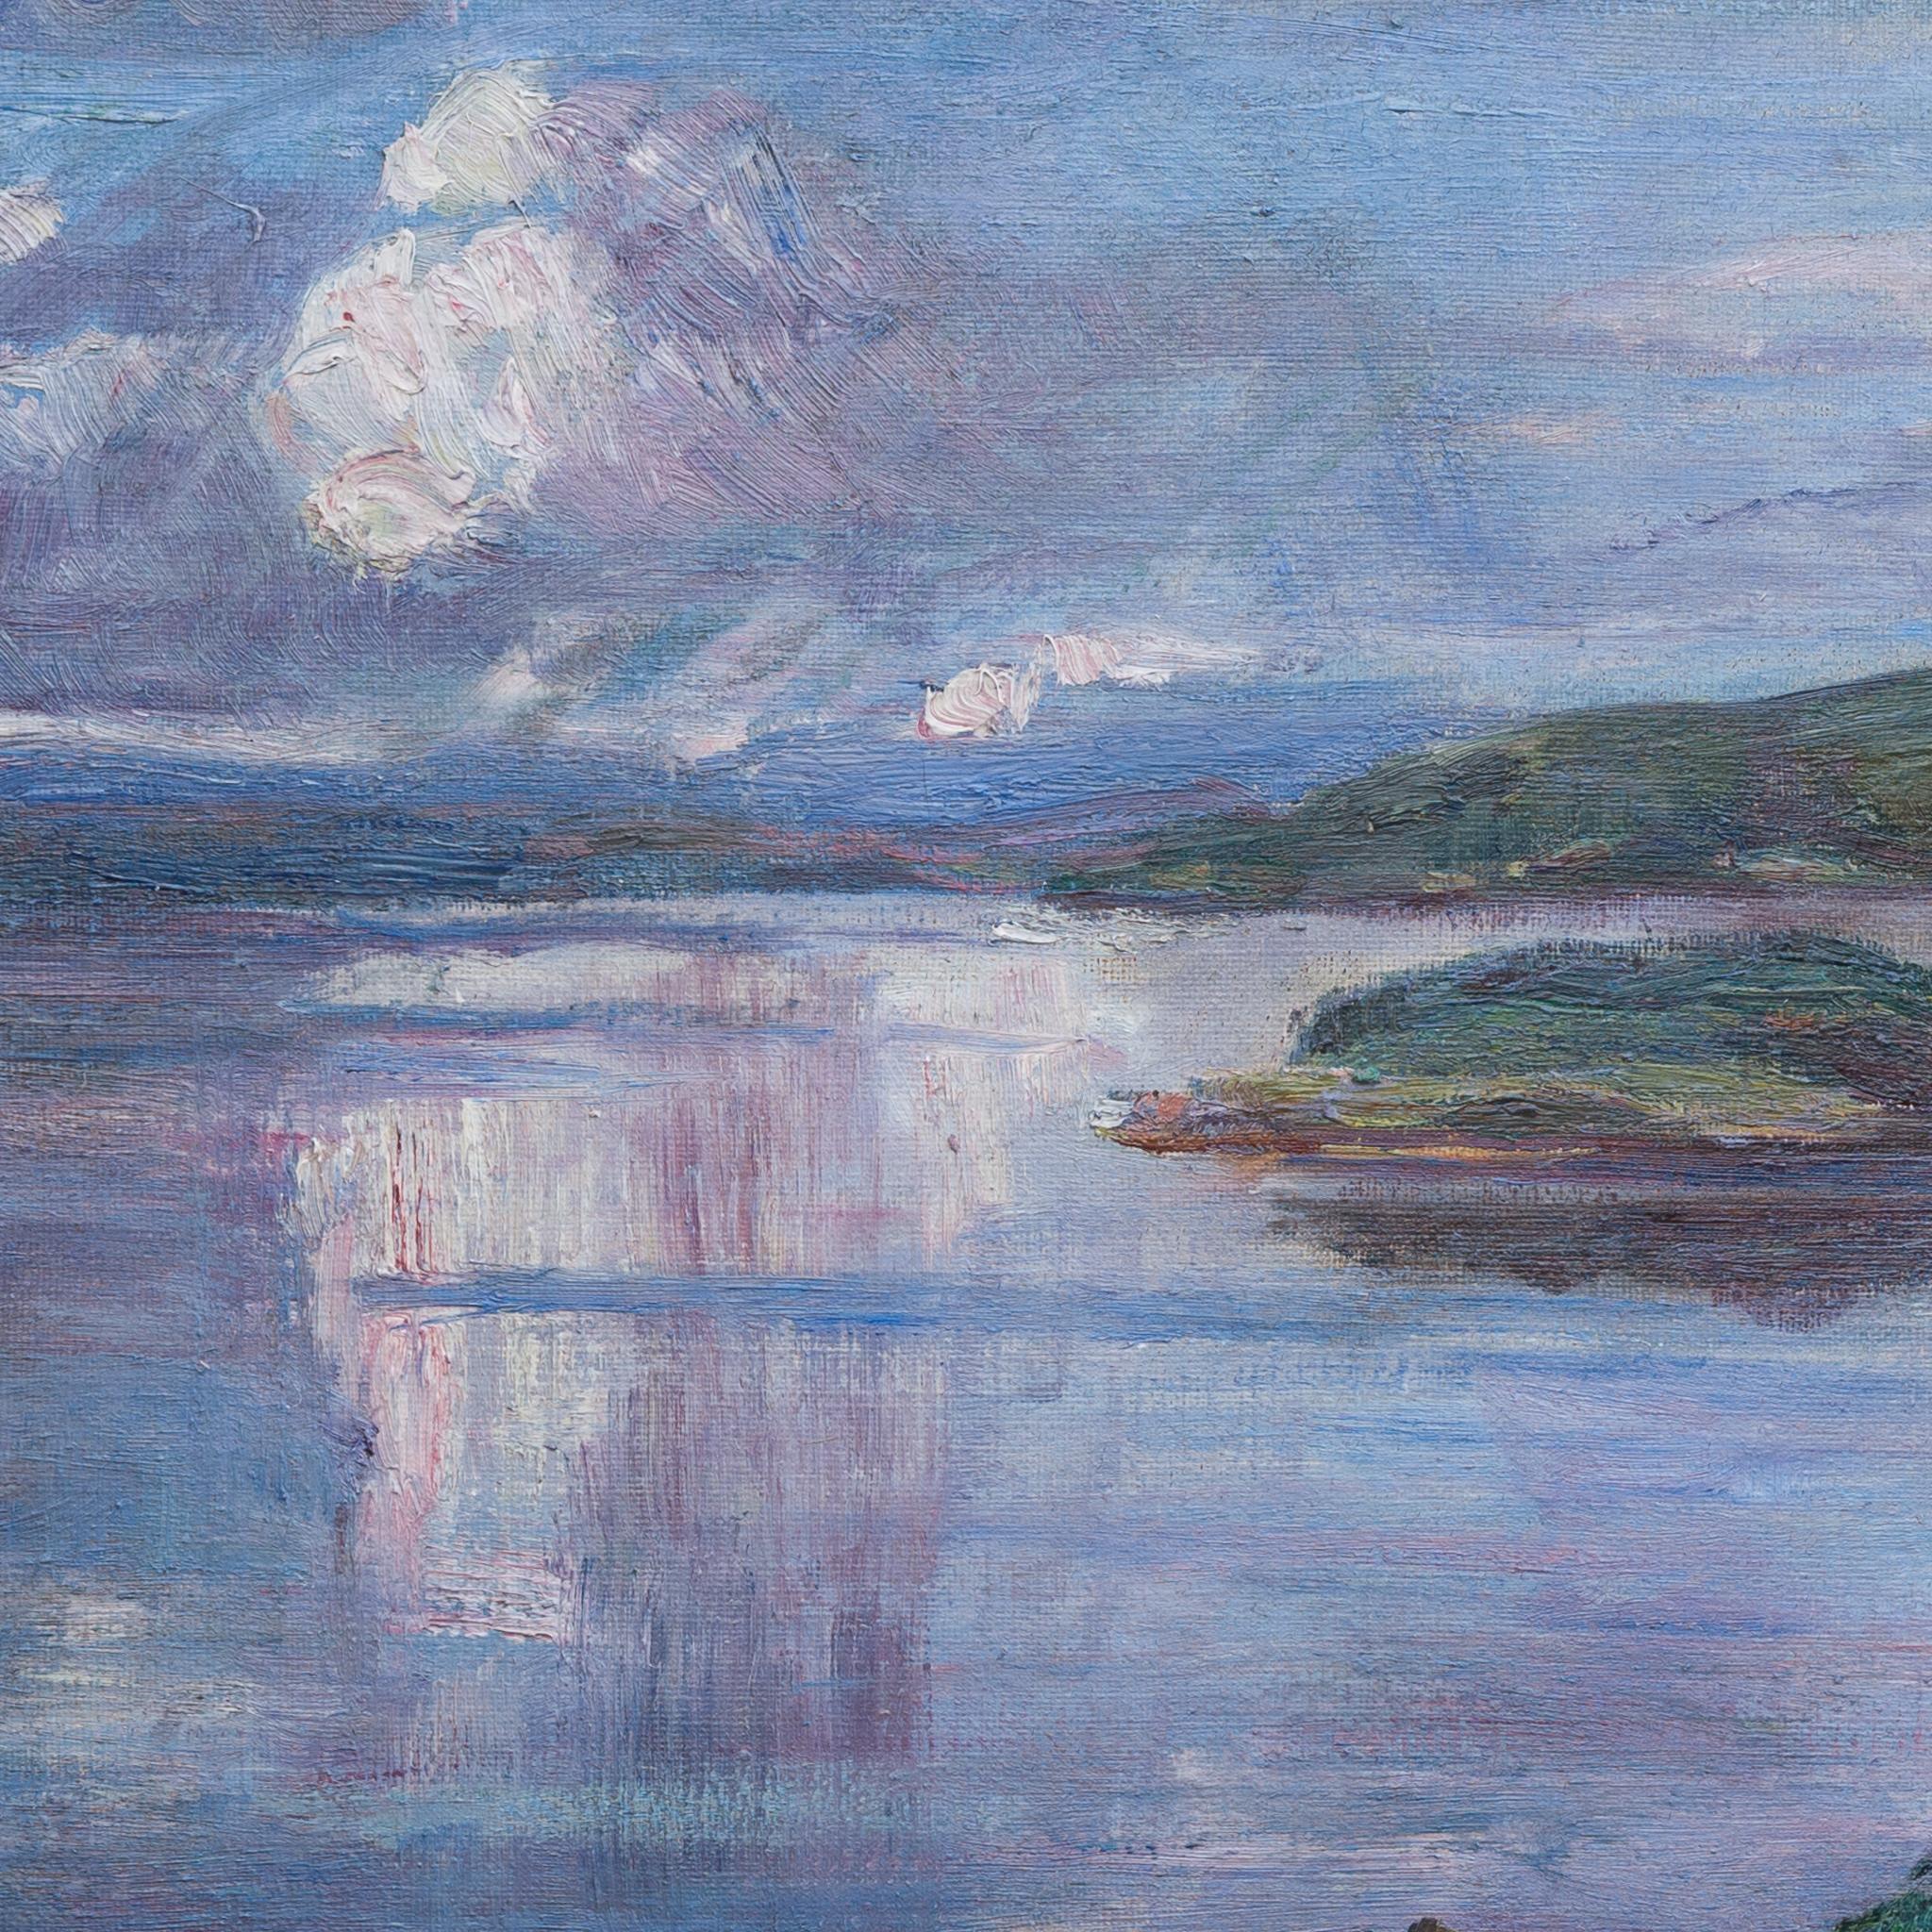 Essai :
Nous avons le plaisir de présenter une magnifique peinture du talentueux artiste suédois Alfred Artistics (1878-1935). Ce paysage à couper le souffle offre une vue sur un lac, qui serait le lac Mangen, près de la ville natale d'Ekstam. Au